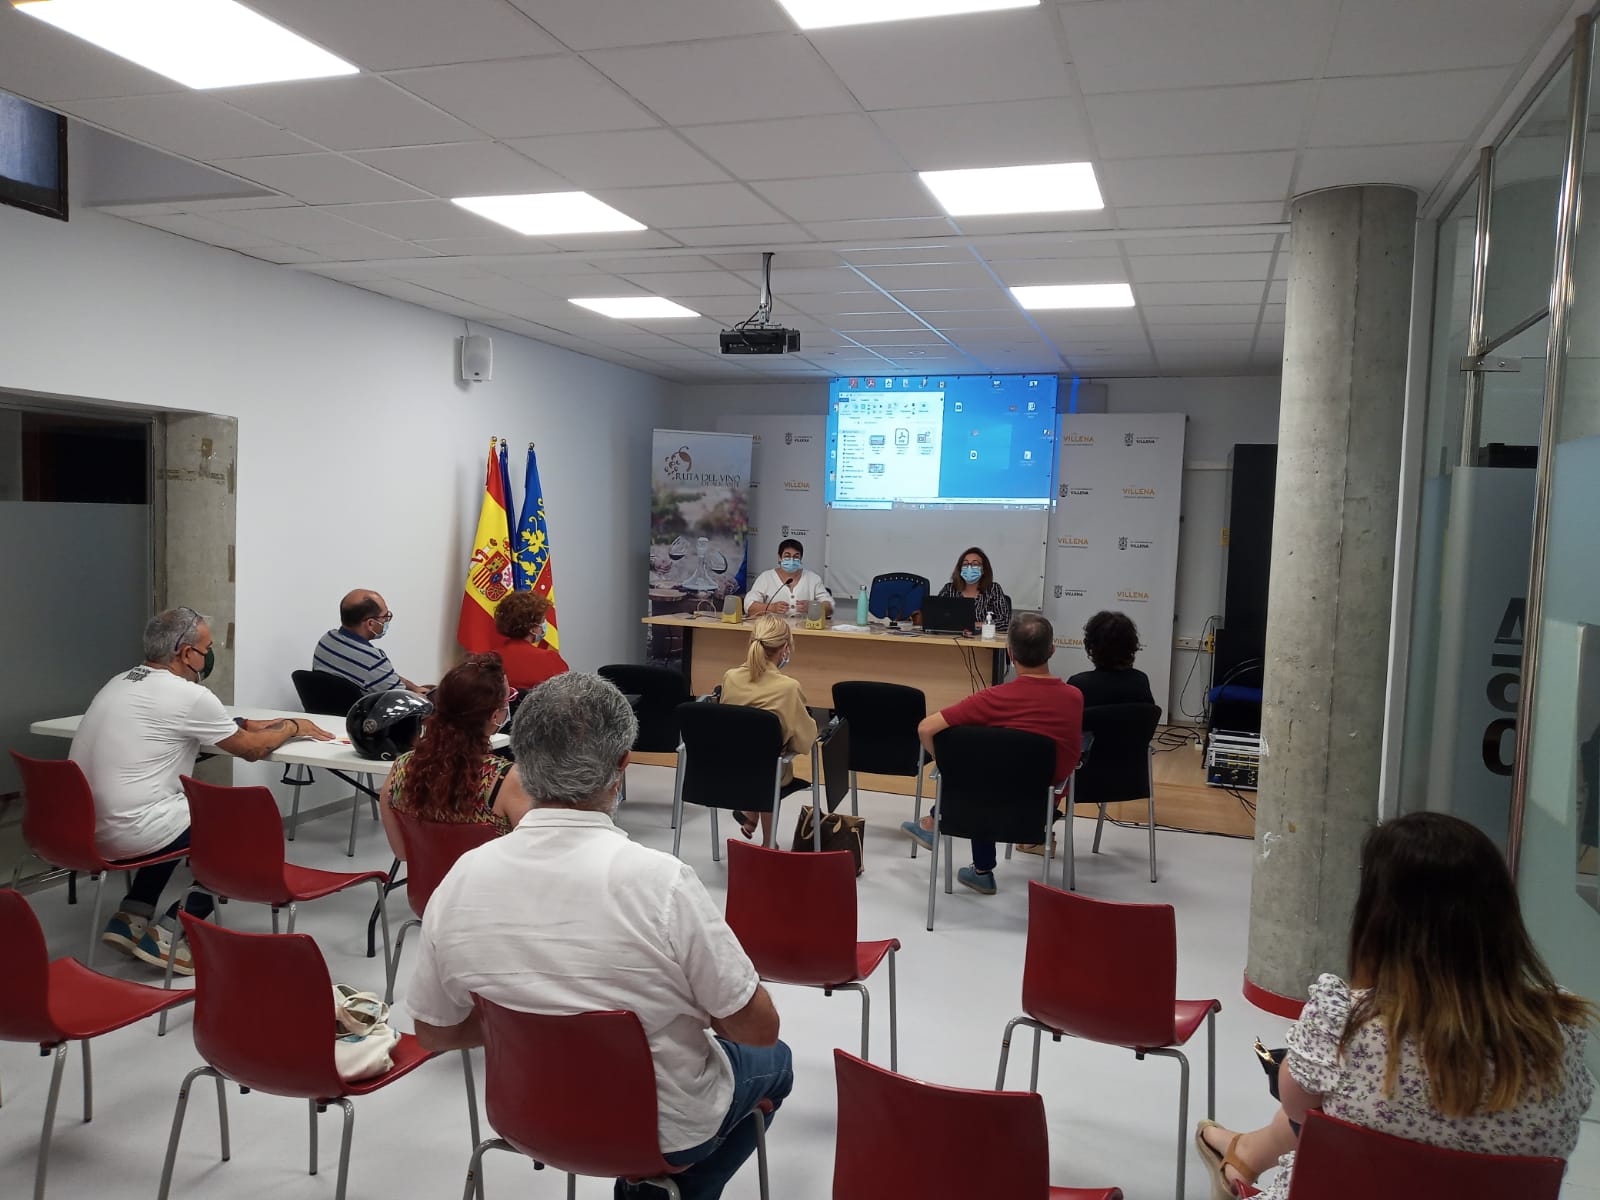 La Ruta del Vino de Alicante reúne a bodegueros y hosteleros para impulsar el enoturismo en Villena